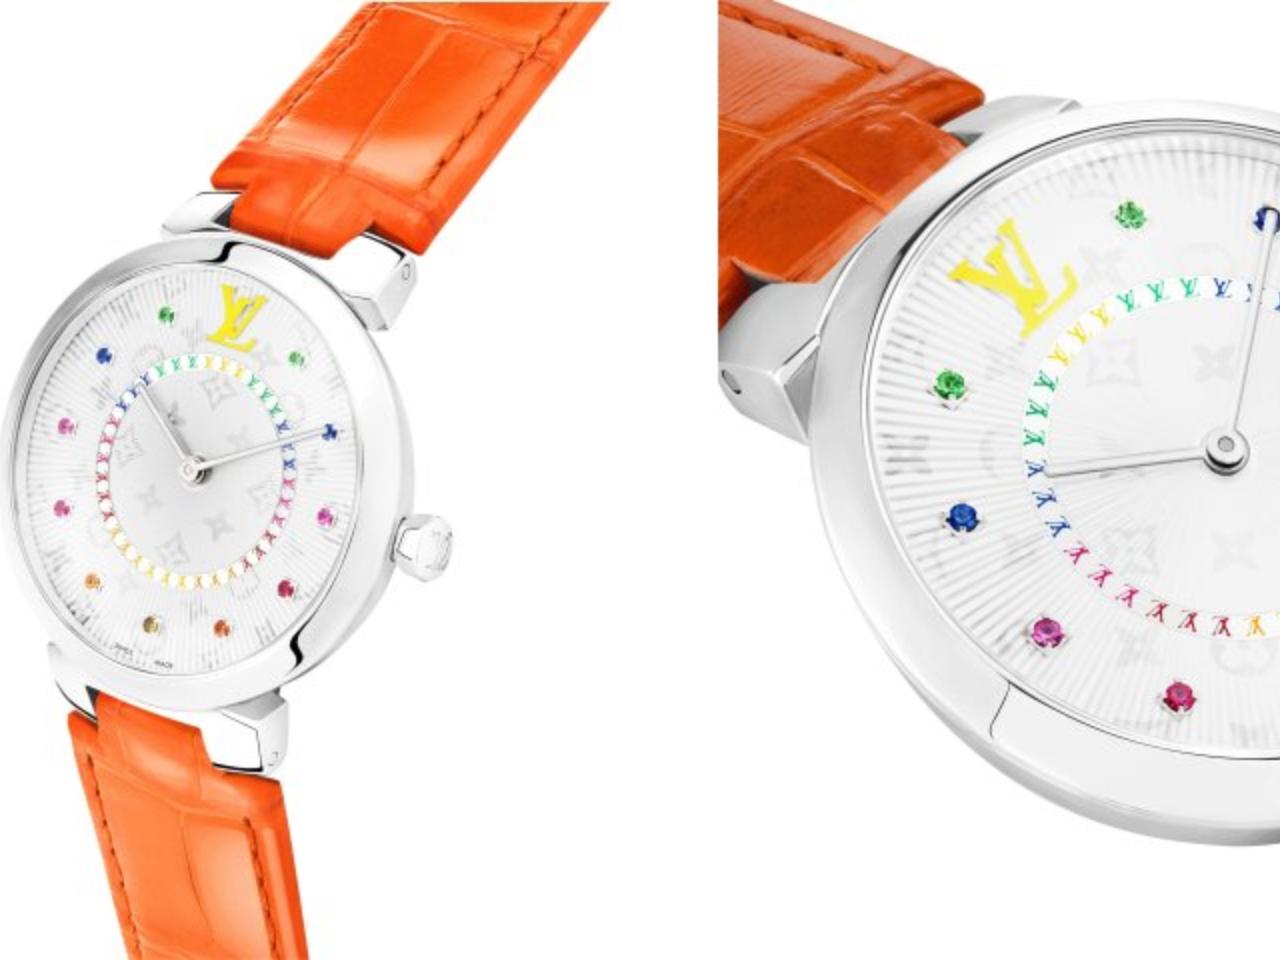 ルイヴィトンのレインボー腕時計のモデル種類、タンブール スリム PM レインボー＆タンブール スリム MM レインボー